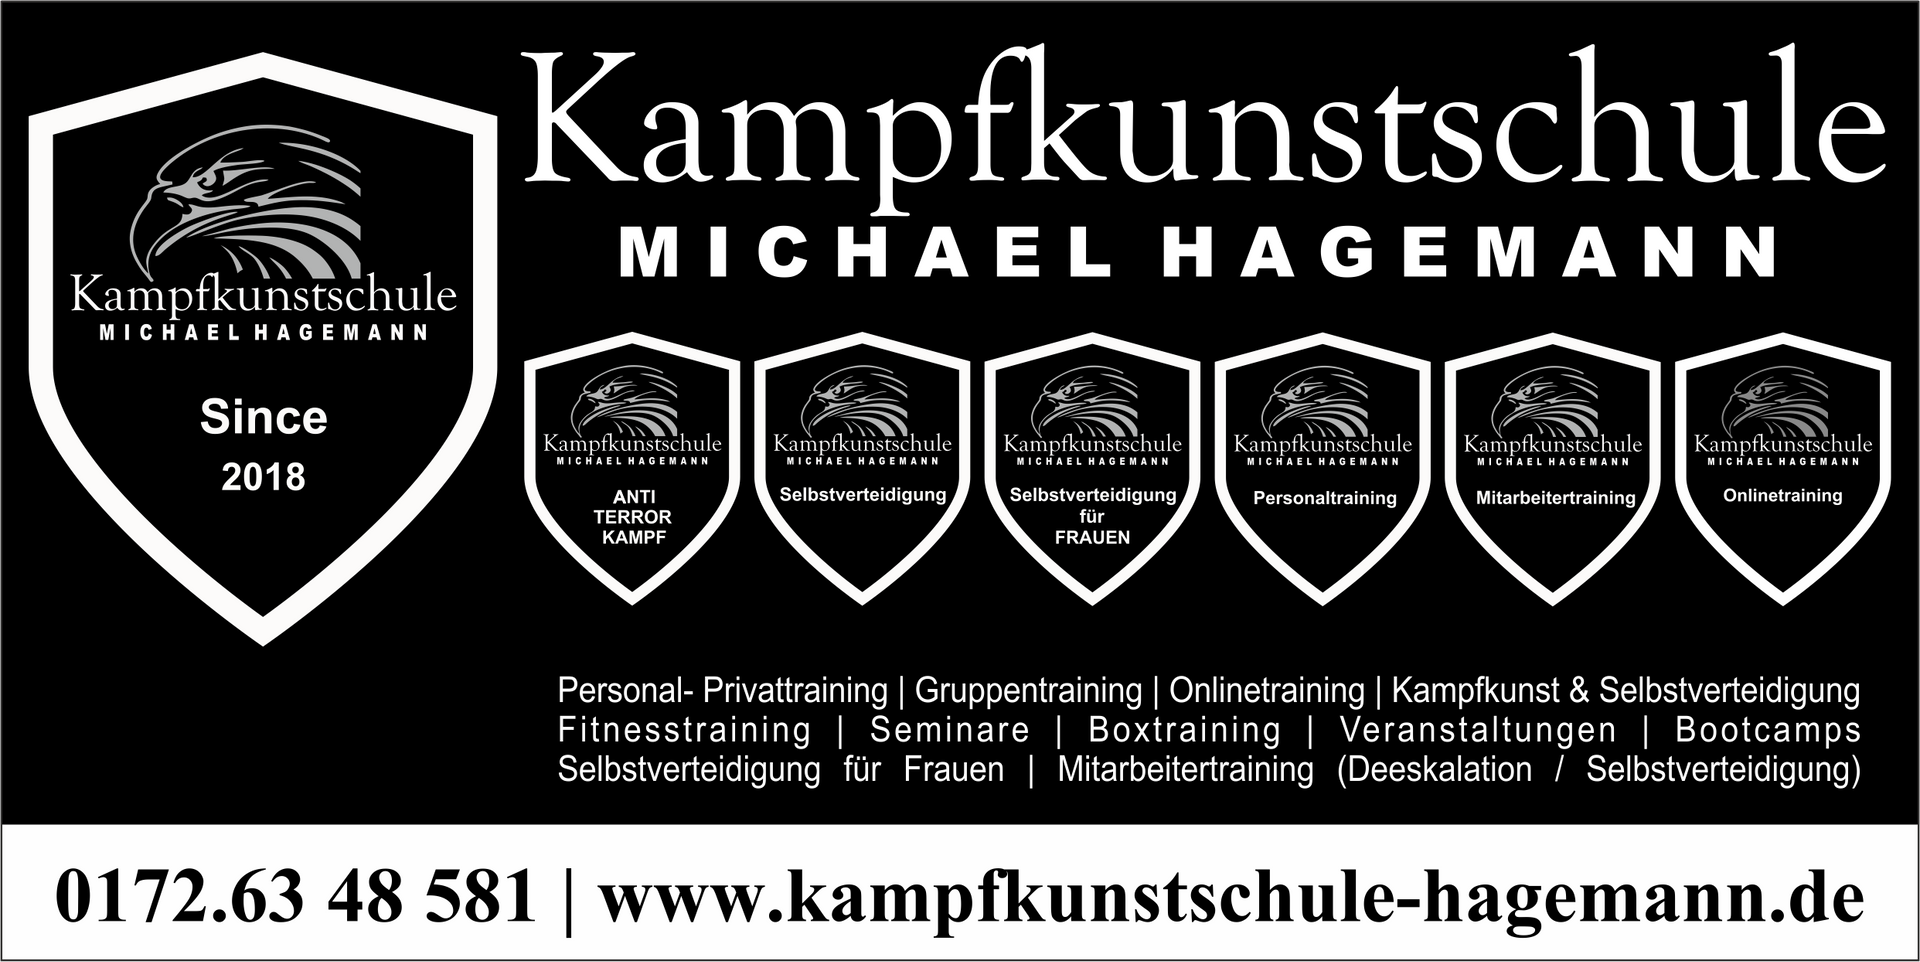 (c) Kampfkunstschule-hagemann.de